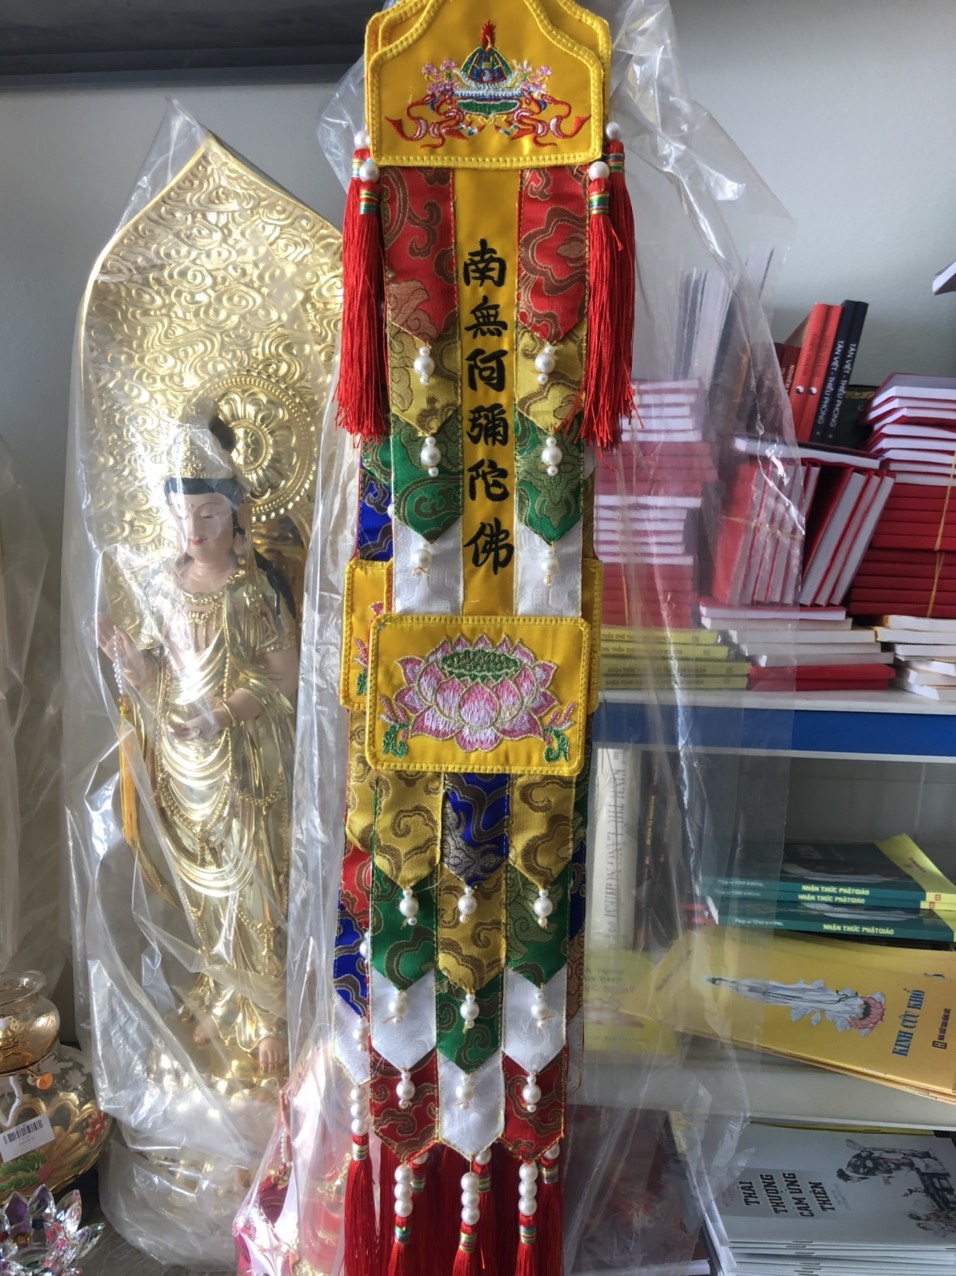 Cờ phướn Phật giáo đang trở thành một biểu tượng tuyệt vời của niềm tin và tâm linh cho nhiều người. Năm 2024 sẽ là một năm đặc biệt, khi mà cờ phướn Phật giáo sẽ mang đến cho bạn sự thanh tịnh và sự bình an. Hãy xem hình ảnh liên quan để tìm hiểu và cảm nhận thêm sức mạnh của tín ngưỡng Phật giáo, và giúp cho tâm hồn bạn tràn đầy niềm tin và sự bình yên.

Translation:
The Buddhist flag is becoming an amazing symbol of faith and spirituality for many people. In 2024, it will be a special year when the Buddhist flag will bring you purity and peace. Please watch the related image to understand and feel the power of Buddhism, and help your soul be filled with faith and peace.